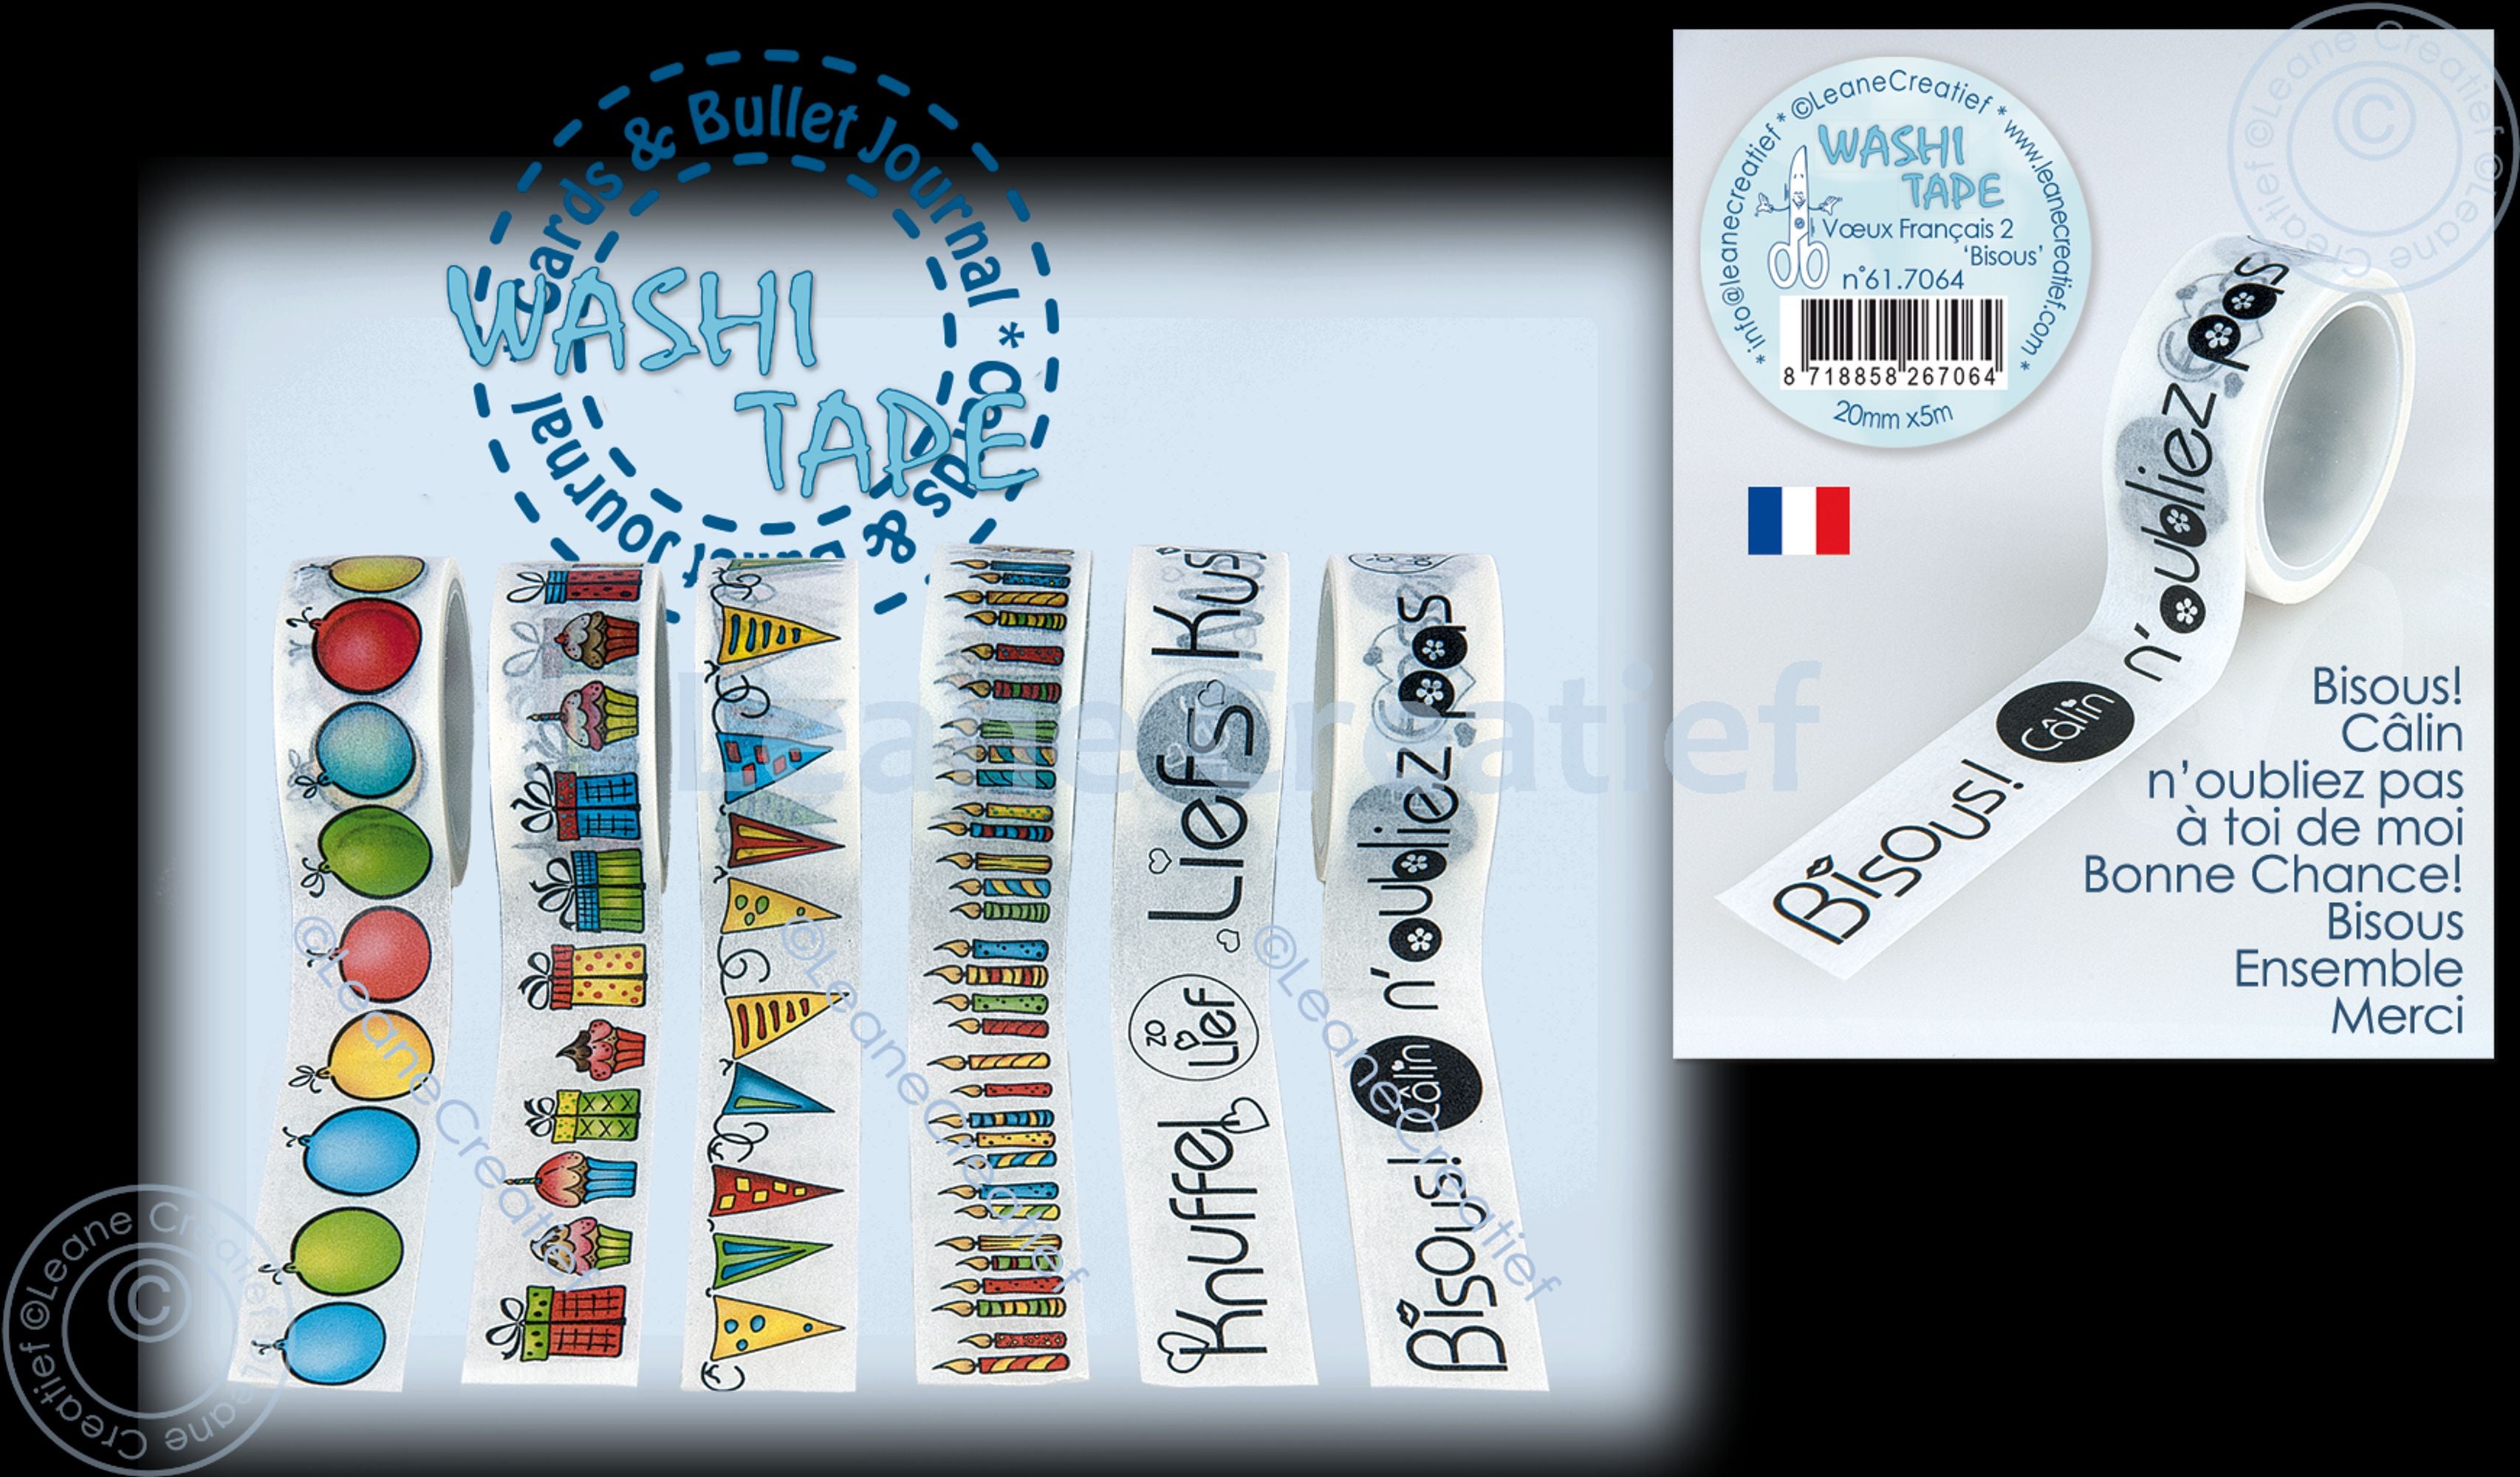 Washi Tape Vœux Français 2 Bisous 20mm X 5m